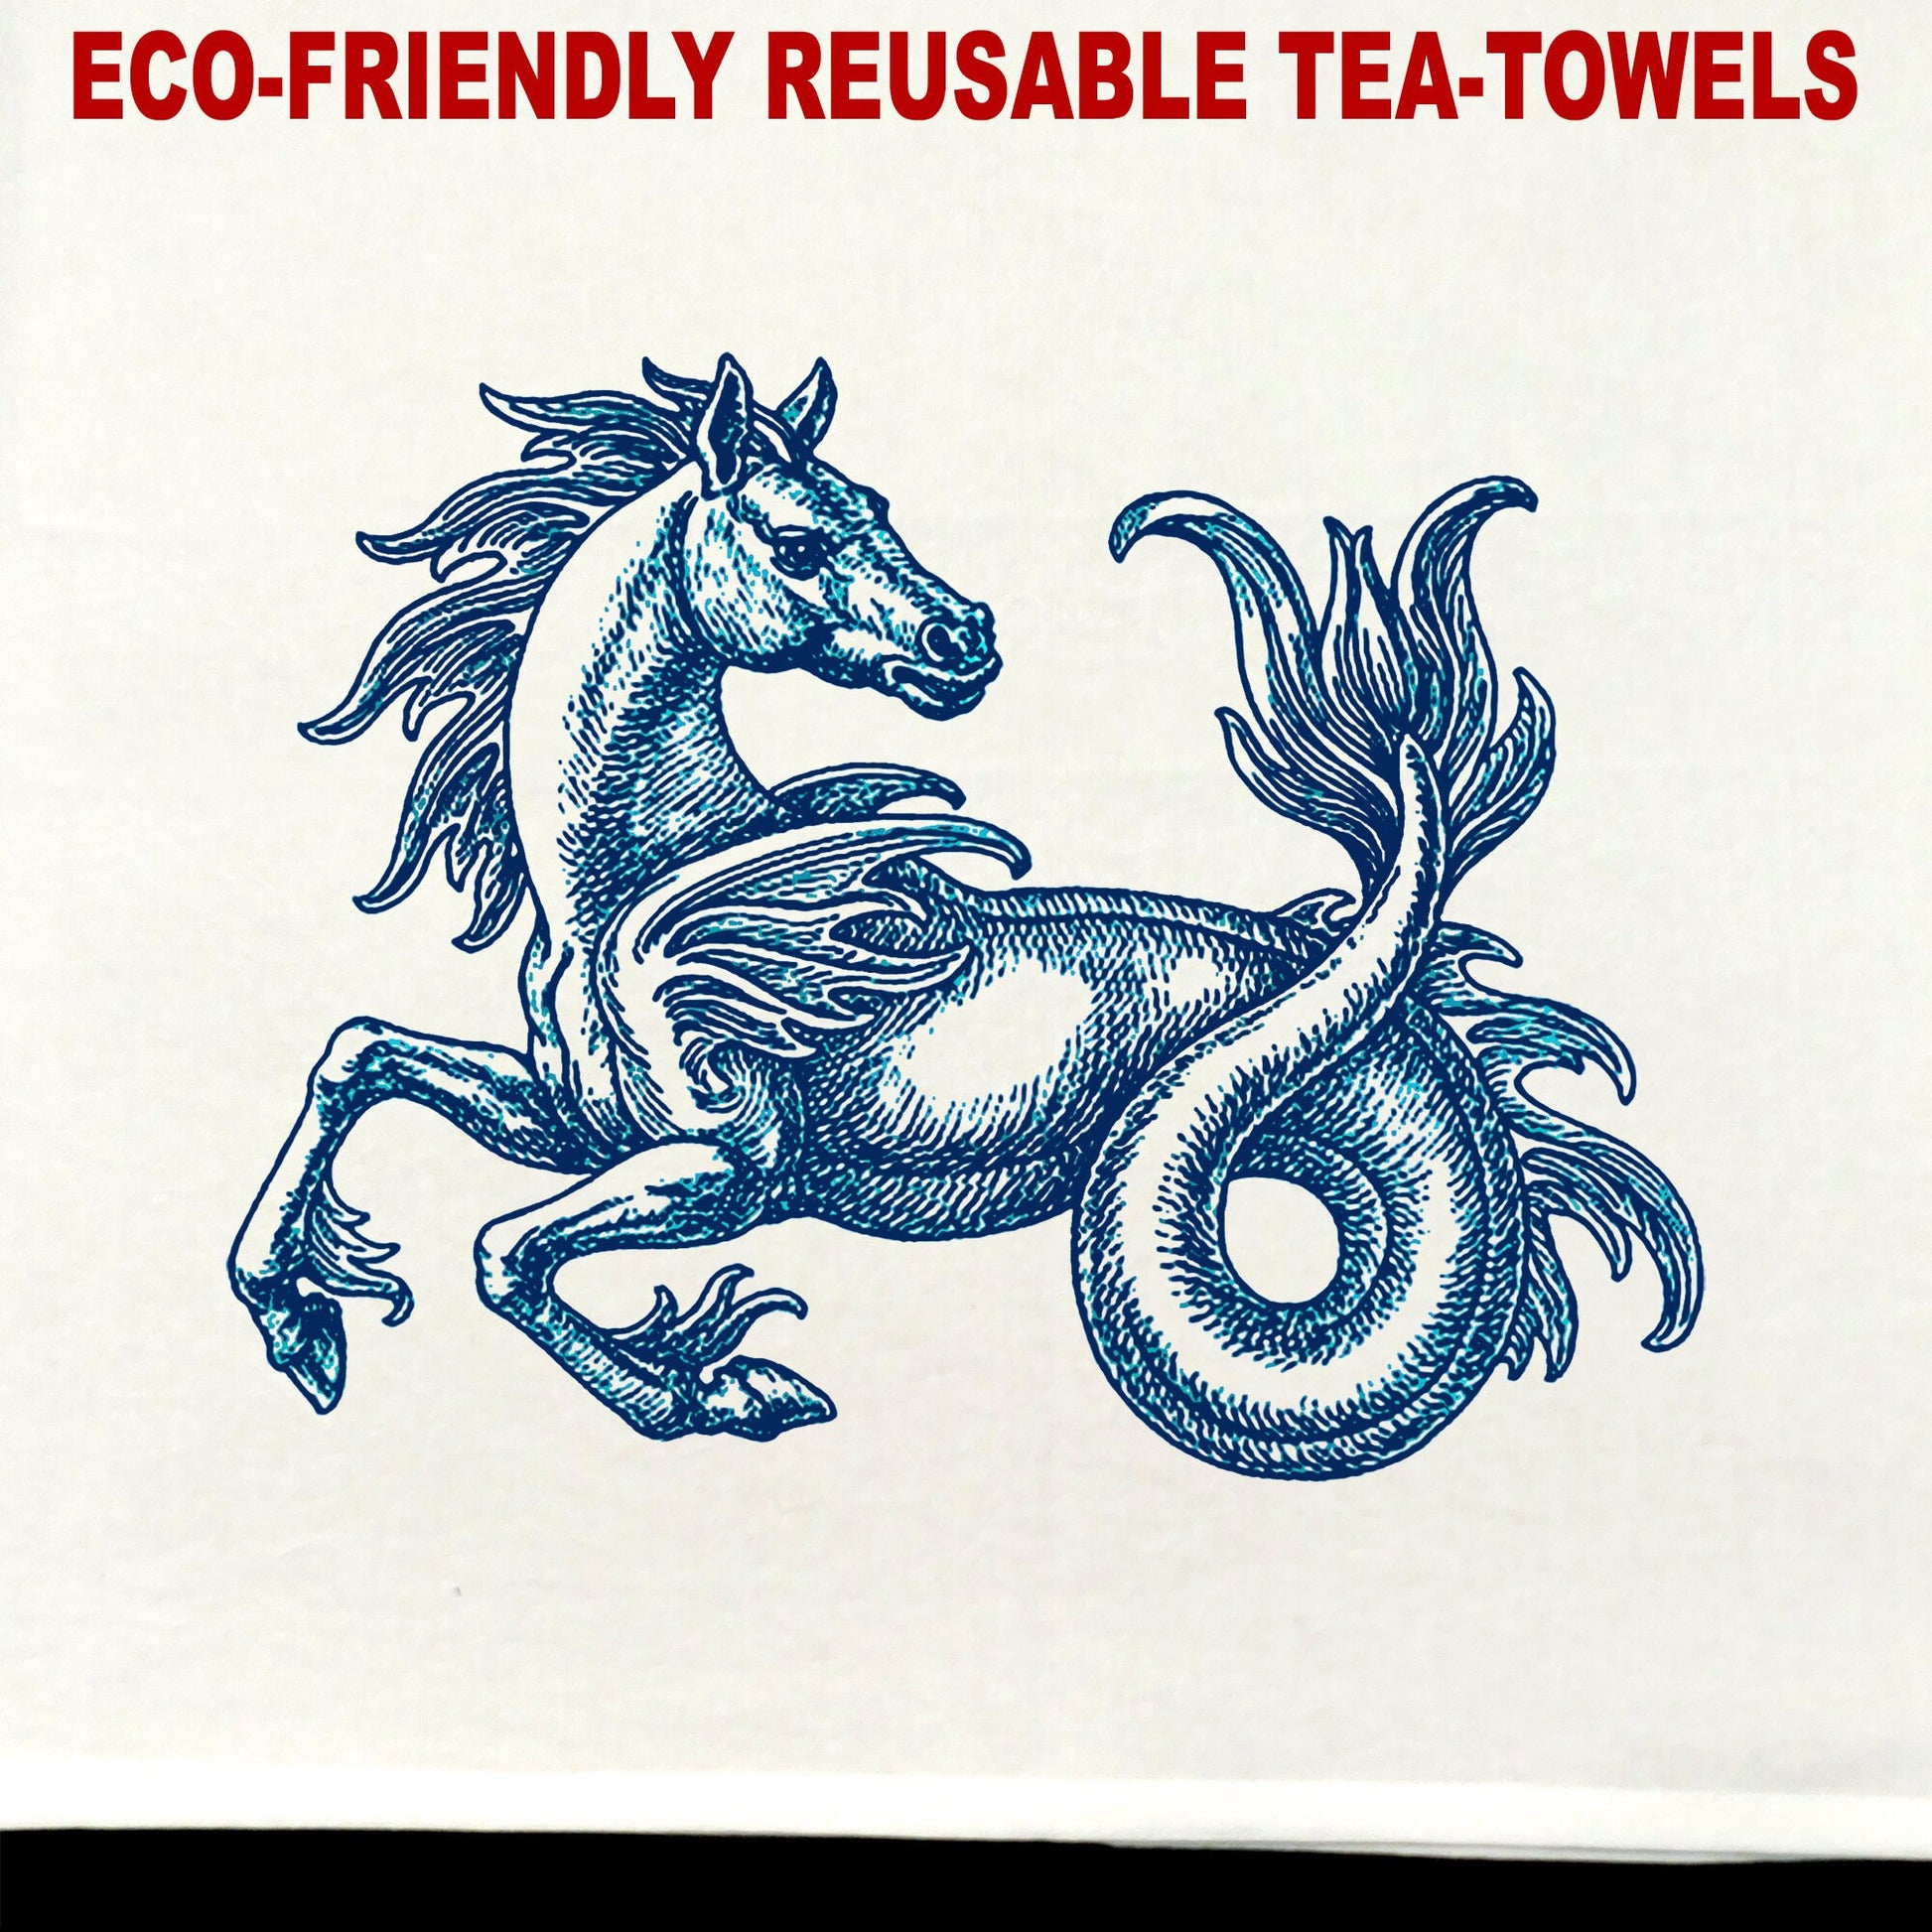 Hippocampus 02 Tea Towel / tea towel / dish towel / hand towel / reusable wipe / kitchen gift / kitchen deco